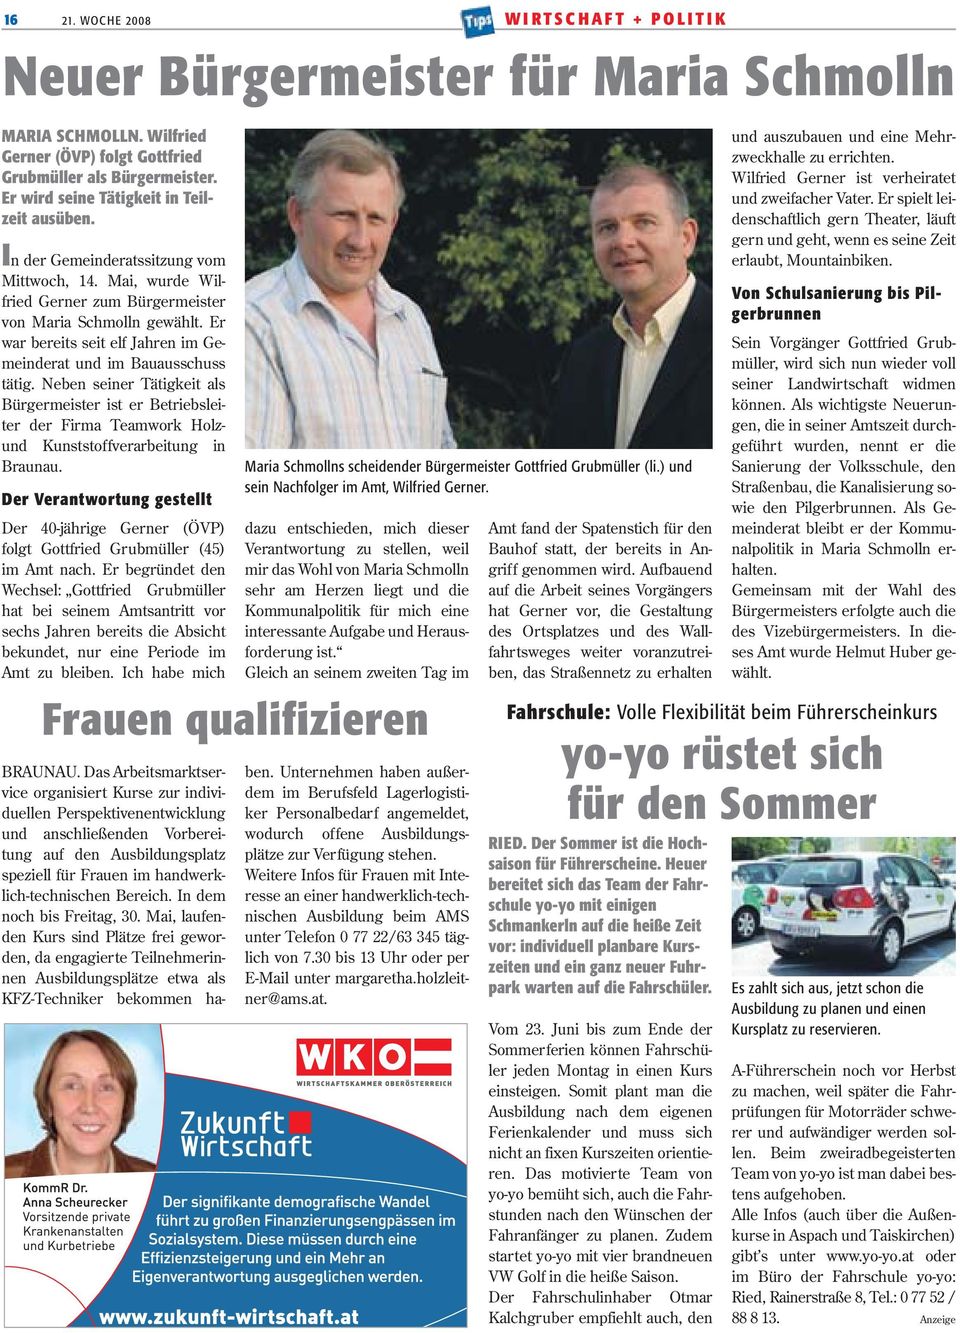 Er war bereits seit elf Jahren im Gemeinderat und im Bauausschuss tätig. Neben seiner Tätigkeit als Bürgermeister ist er Betriebsleiter der Firma Teamwork Holzund Kunststoffverarbeitung in Braunau.